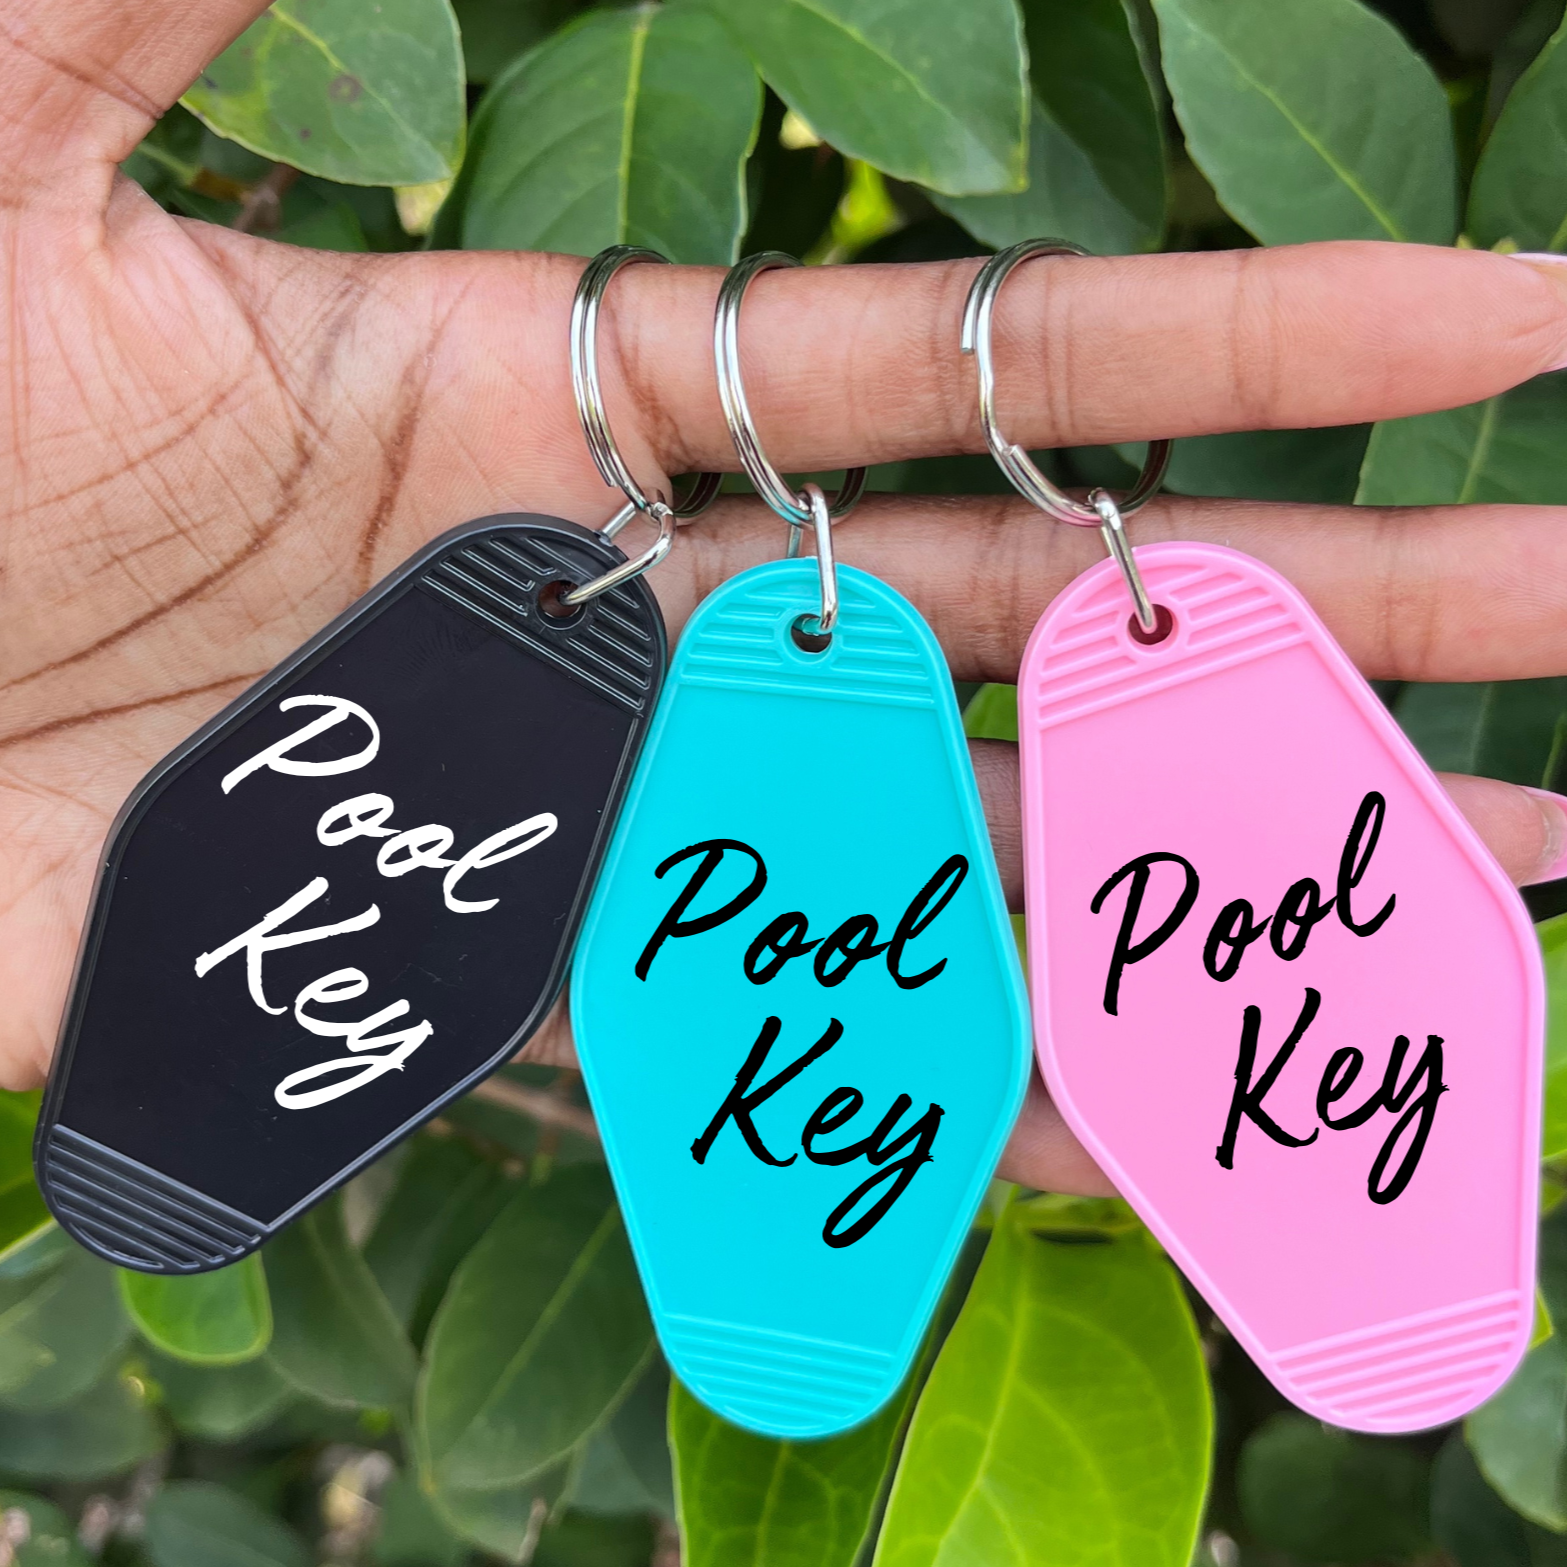 Pool Key Keychain - The Glam Thangz